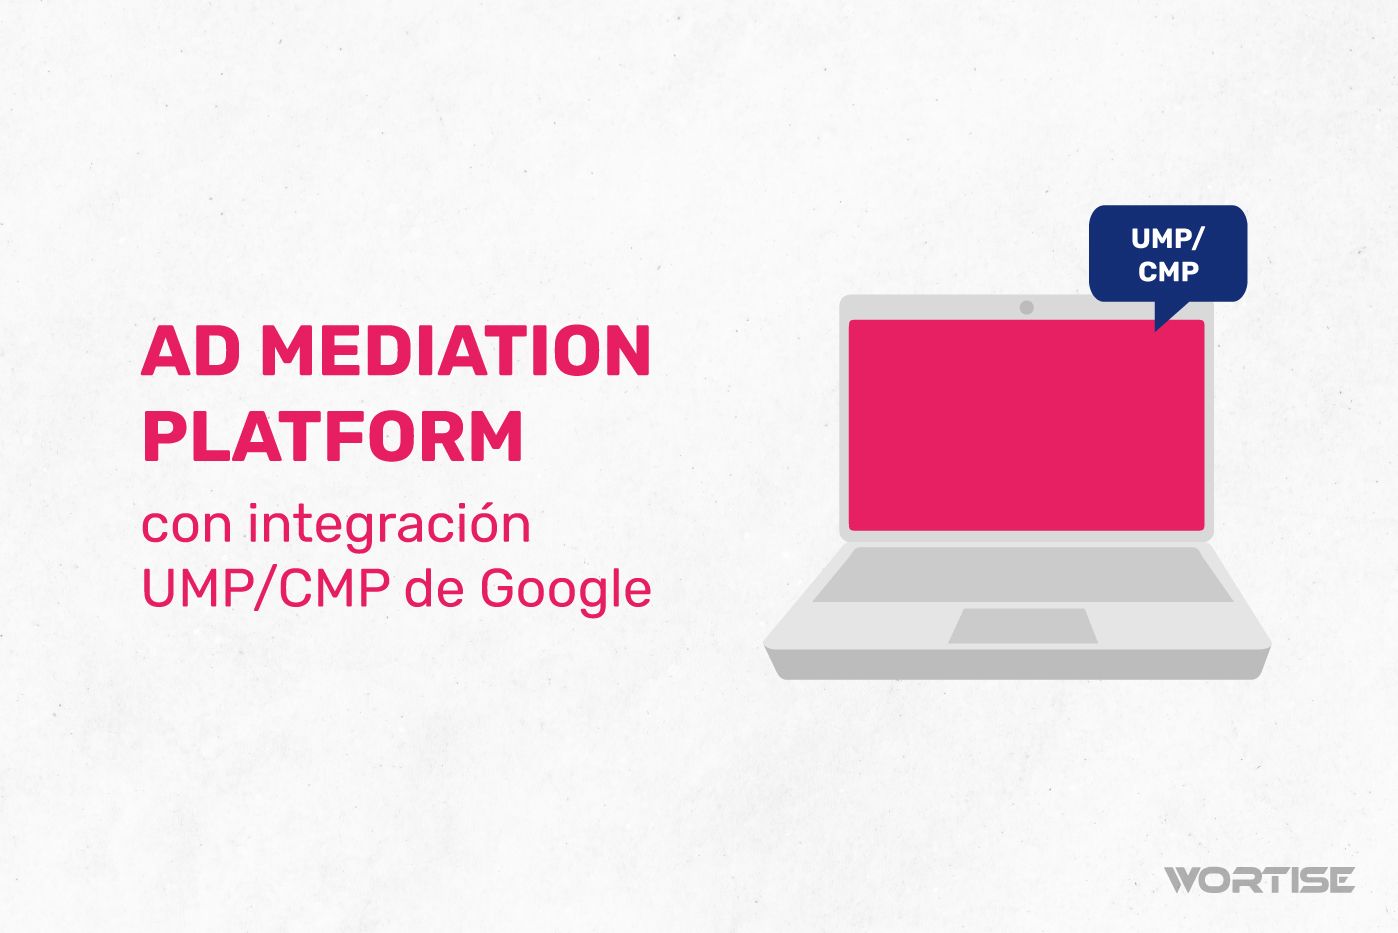 #1 Ad mediation platform con integración UMP/CMP de Google